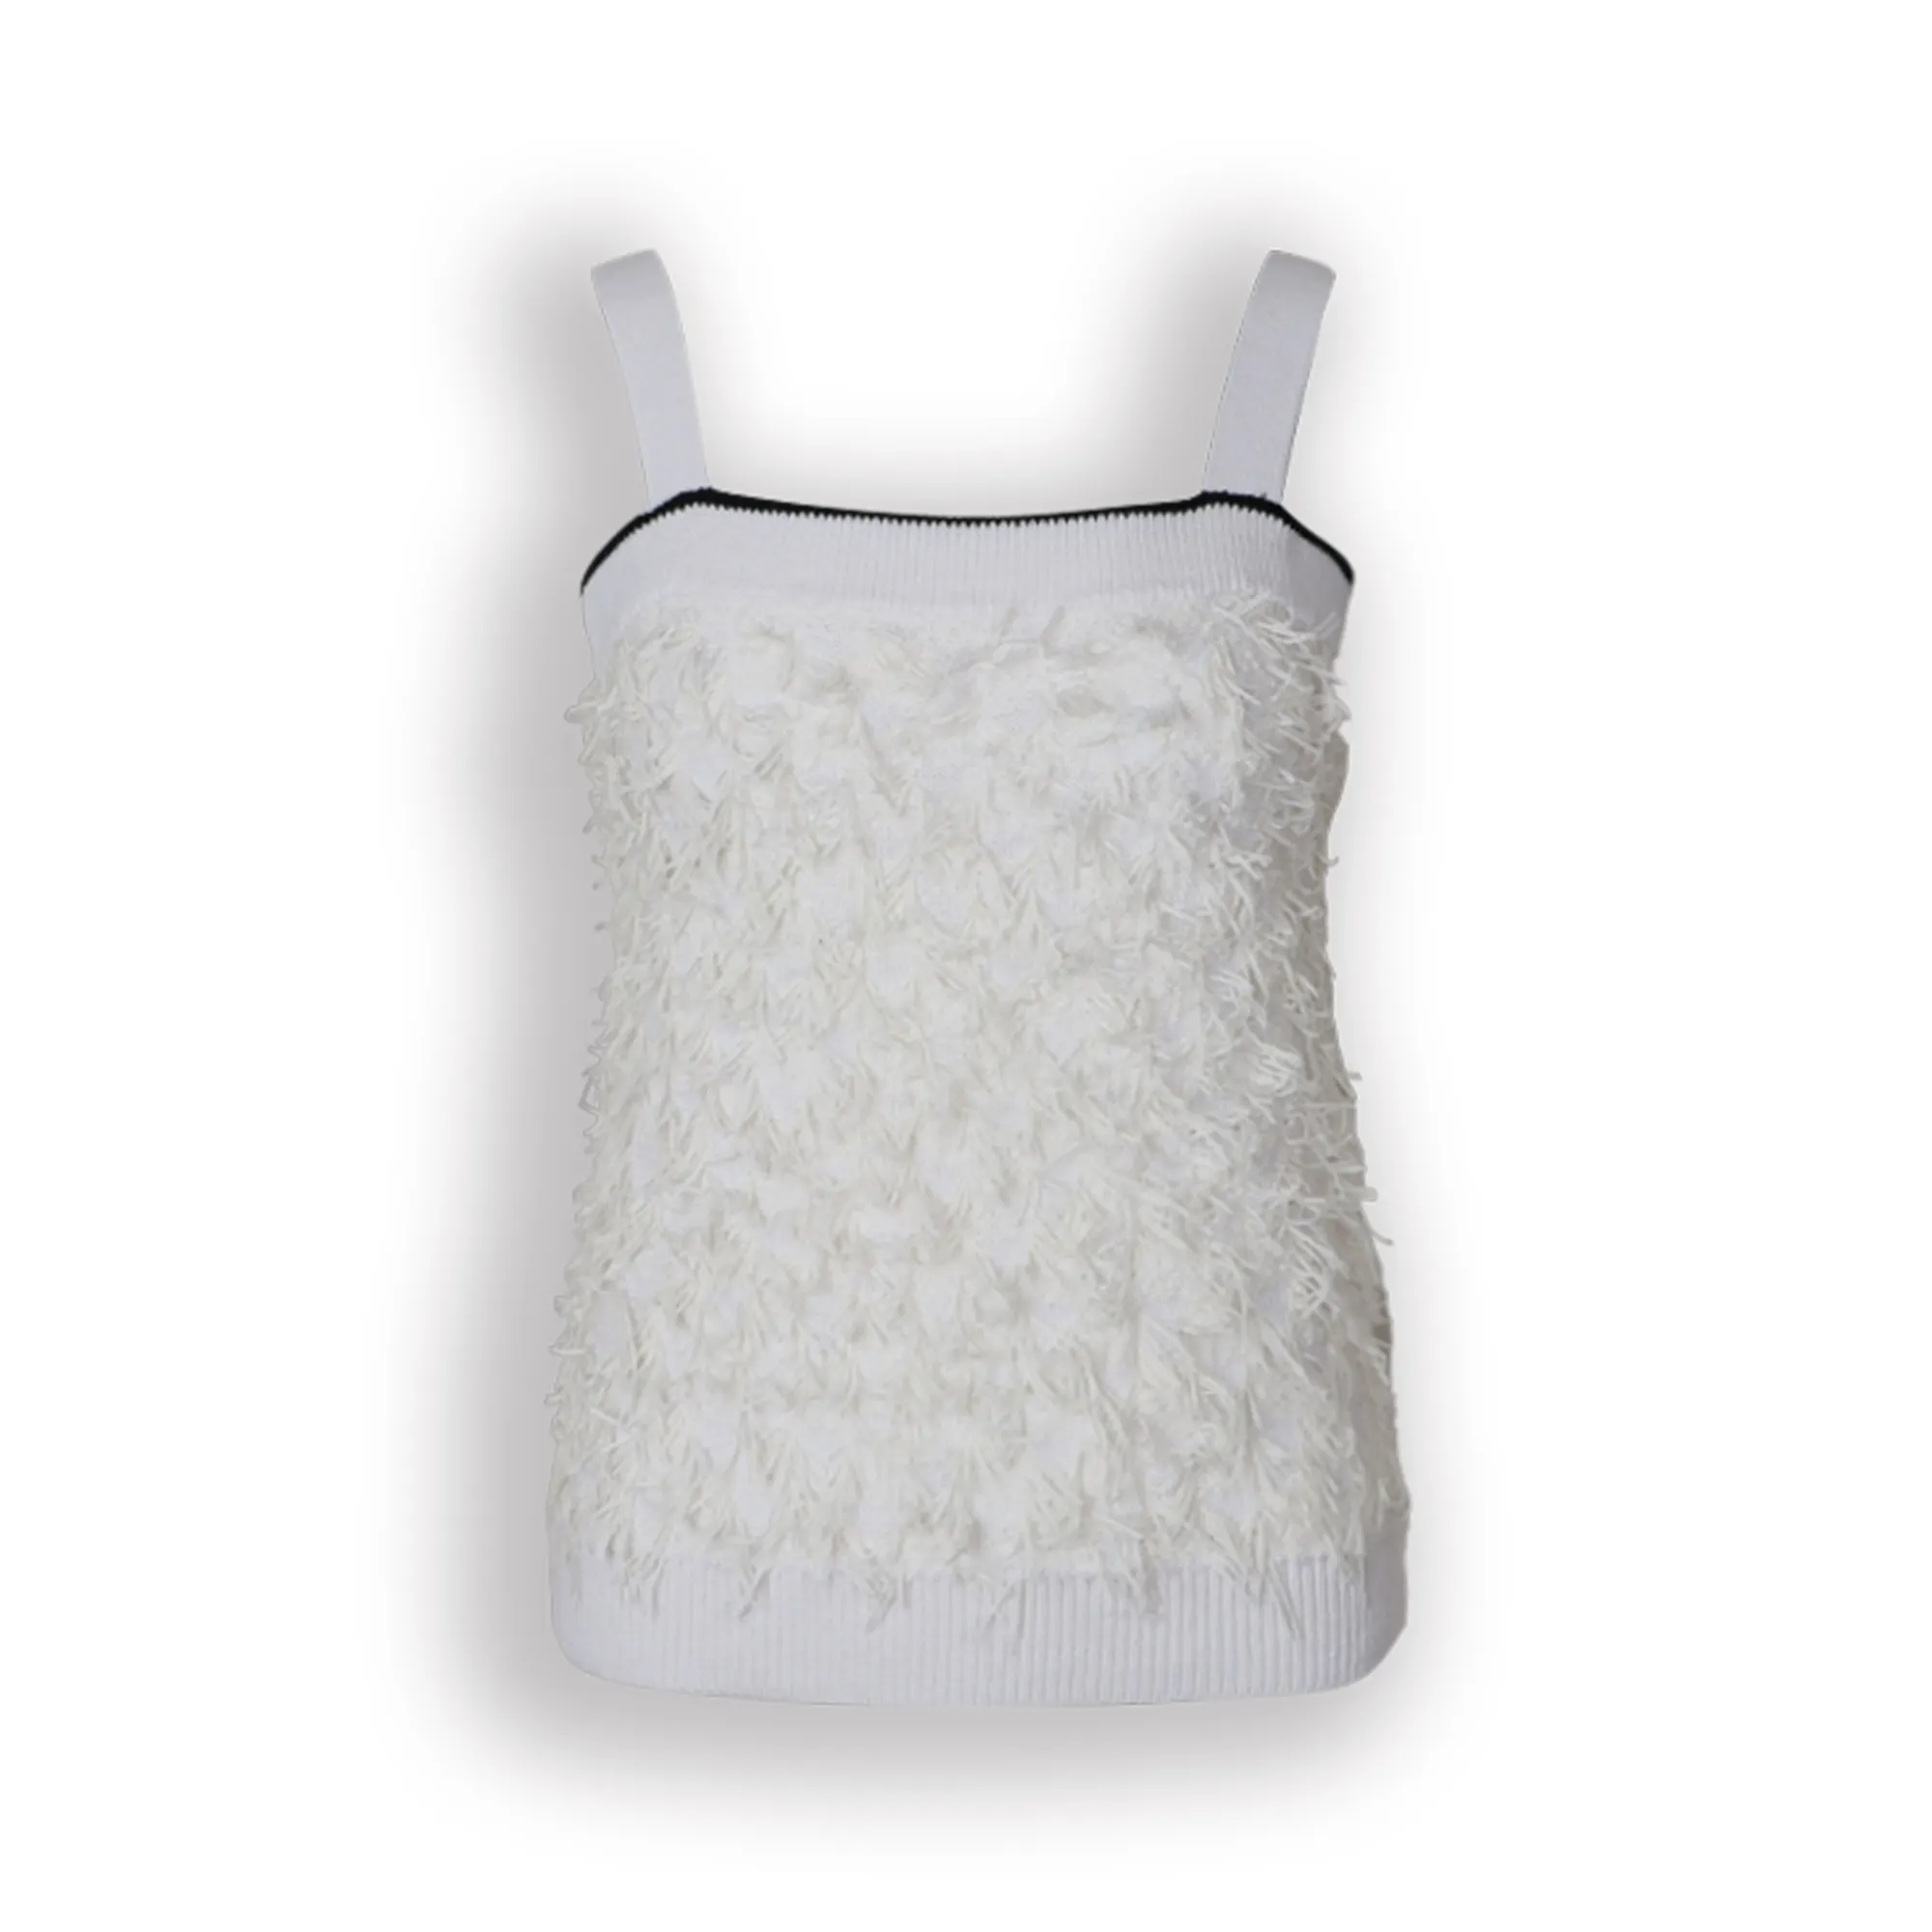 Dernier produit de bonne qualité en coton Sexy Tassels Knit Strap Crop Top pour les femmes